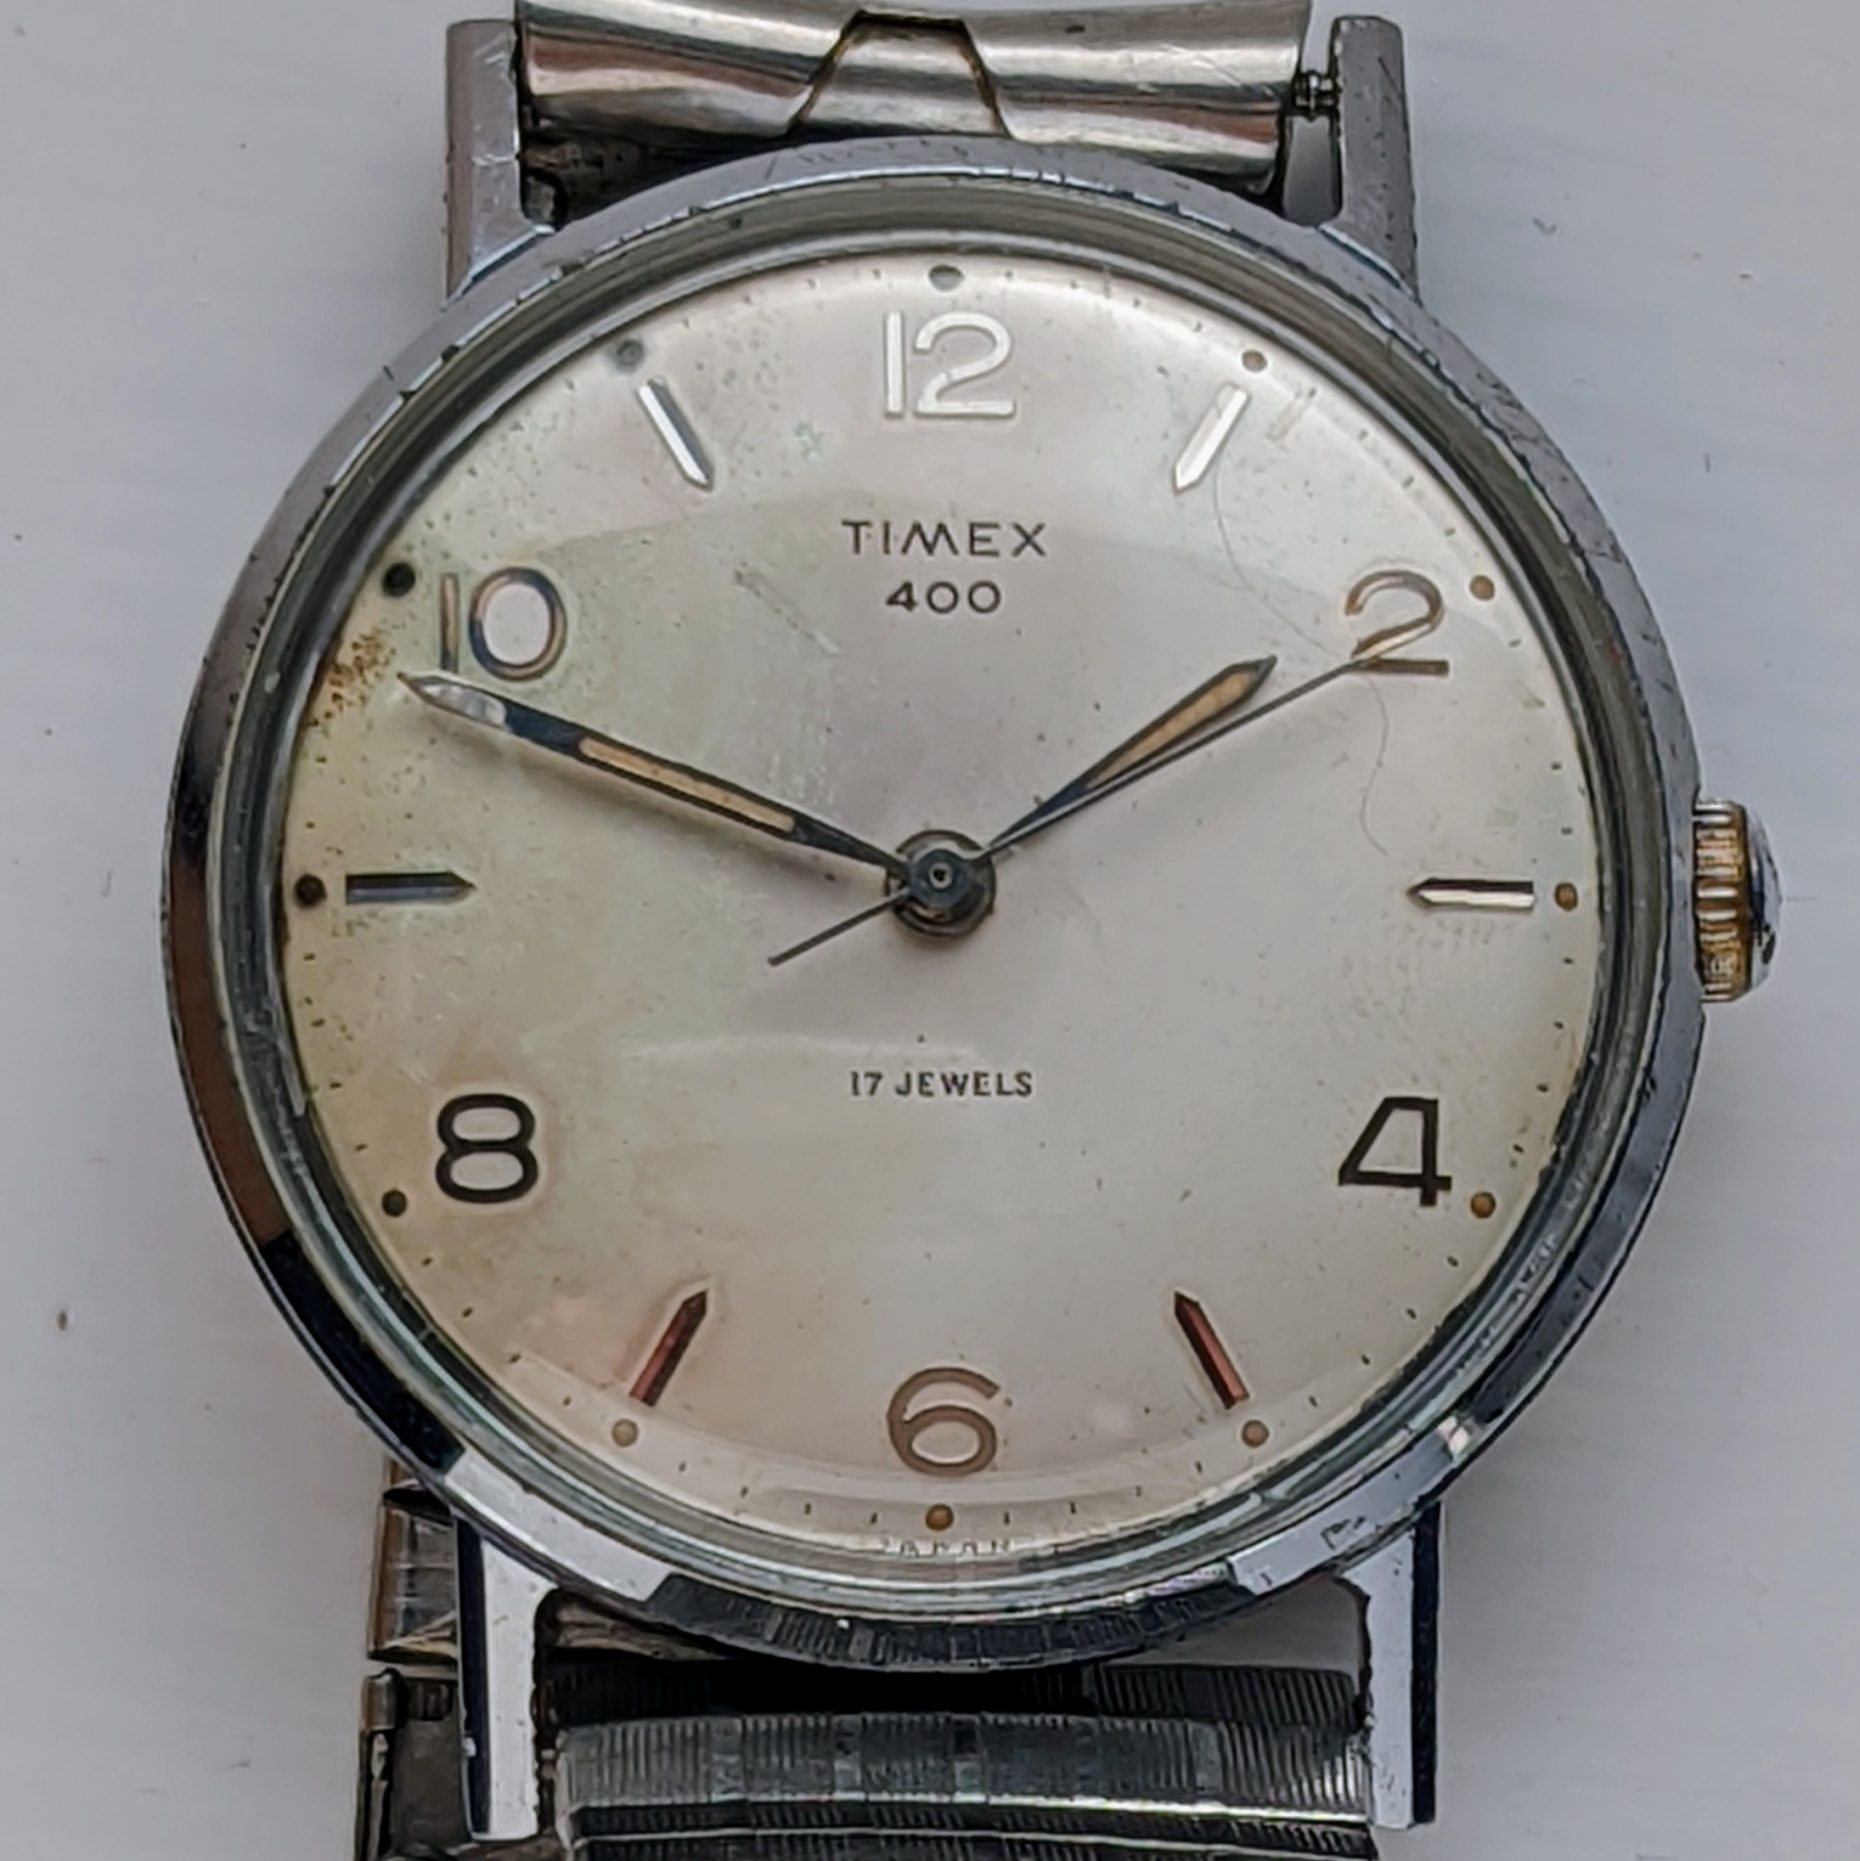 Timex 400 Series 6077 7061 [1961]